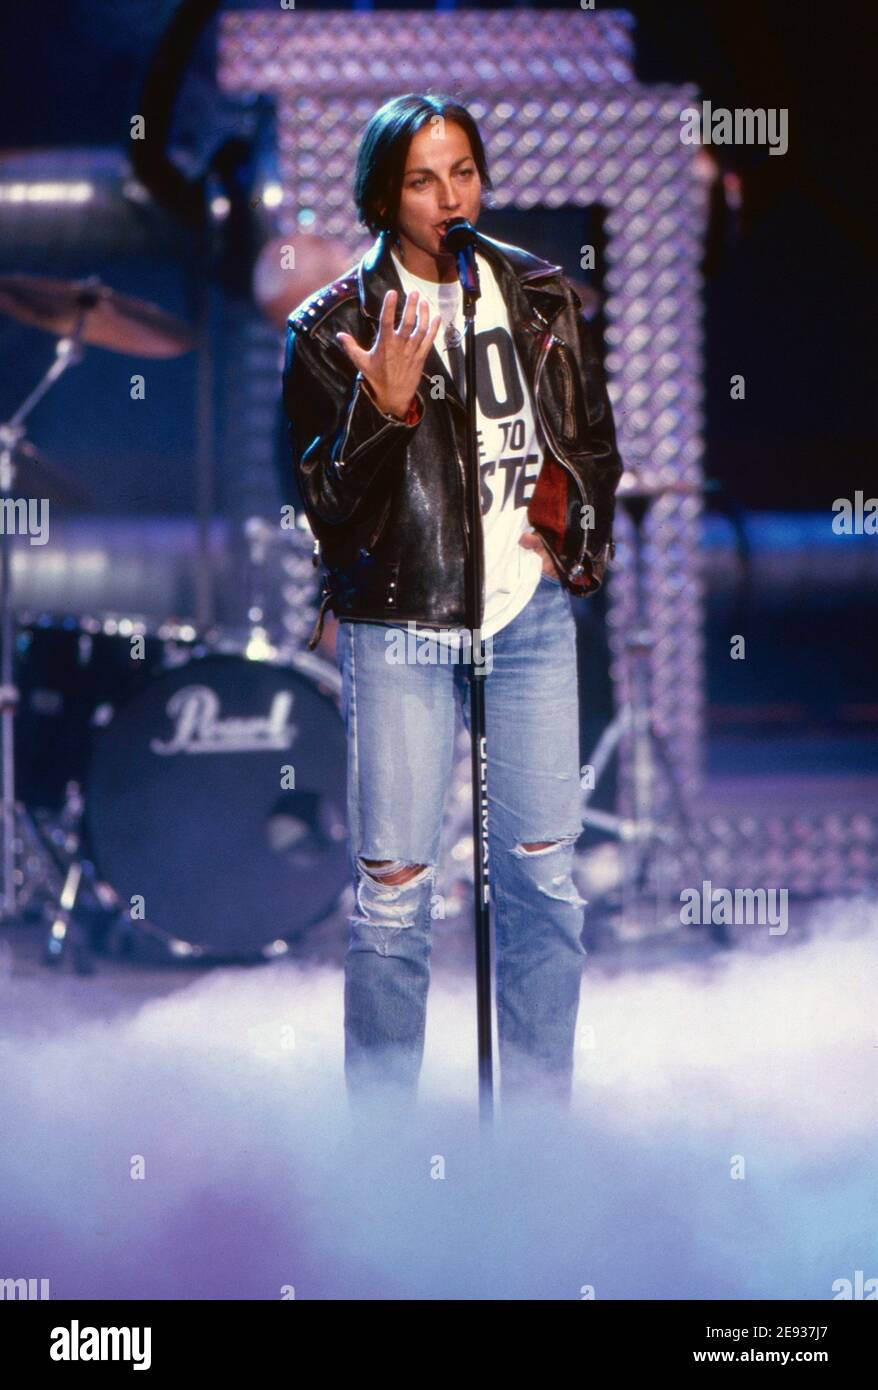 Gianna Nannini, italienische Sängerin, Songschreiberin und Rockröhre, bei einem Auftritt im deutschen Fernsehen, Deutschland um 1993. Stock Photo